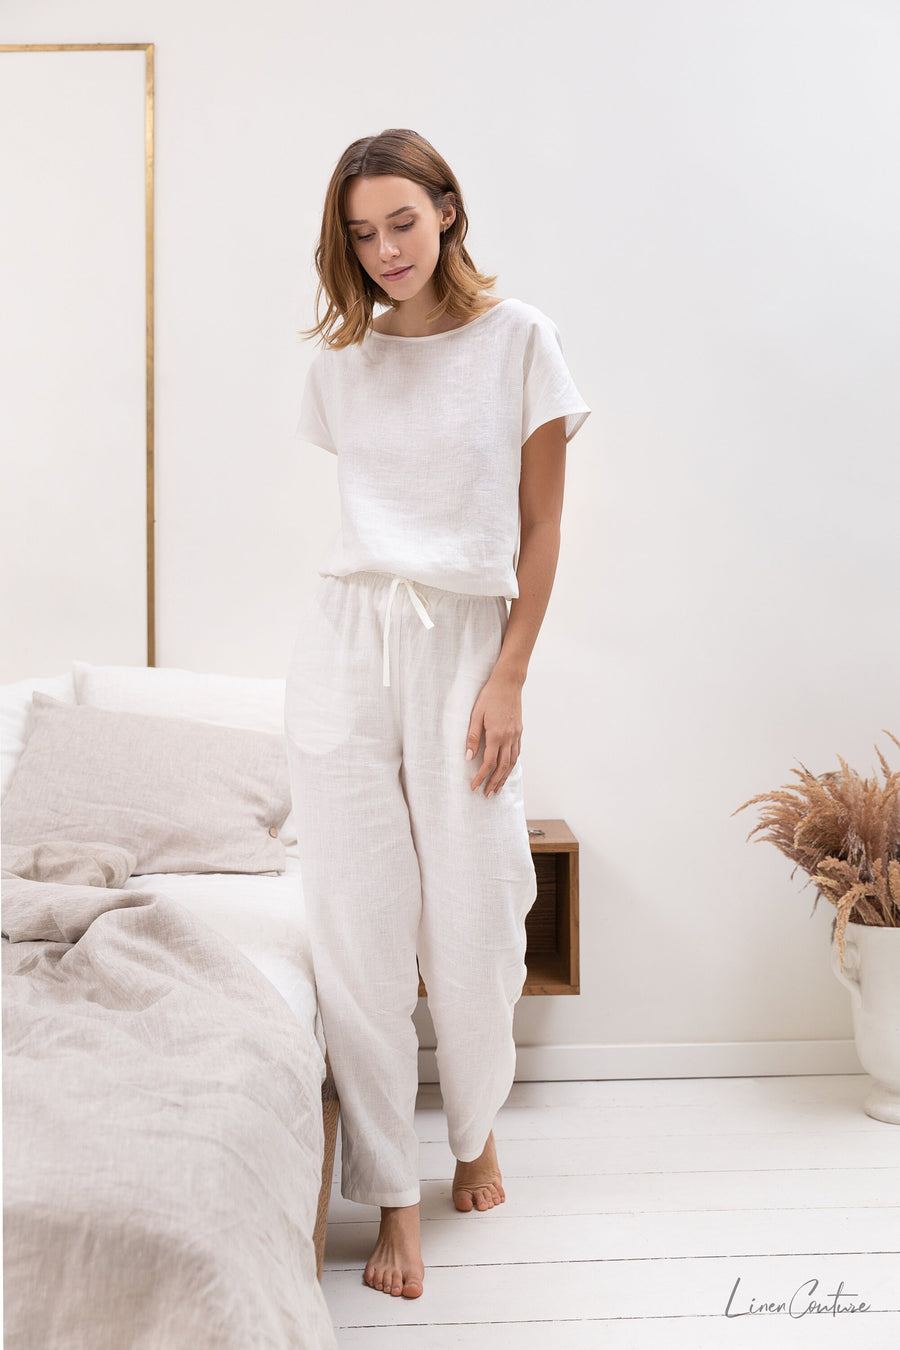 White linen / Natural Linen Pajama set / Linen loungewear / Linen